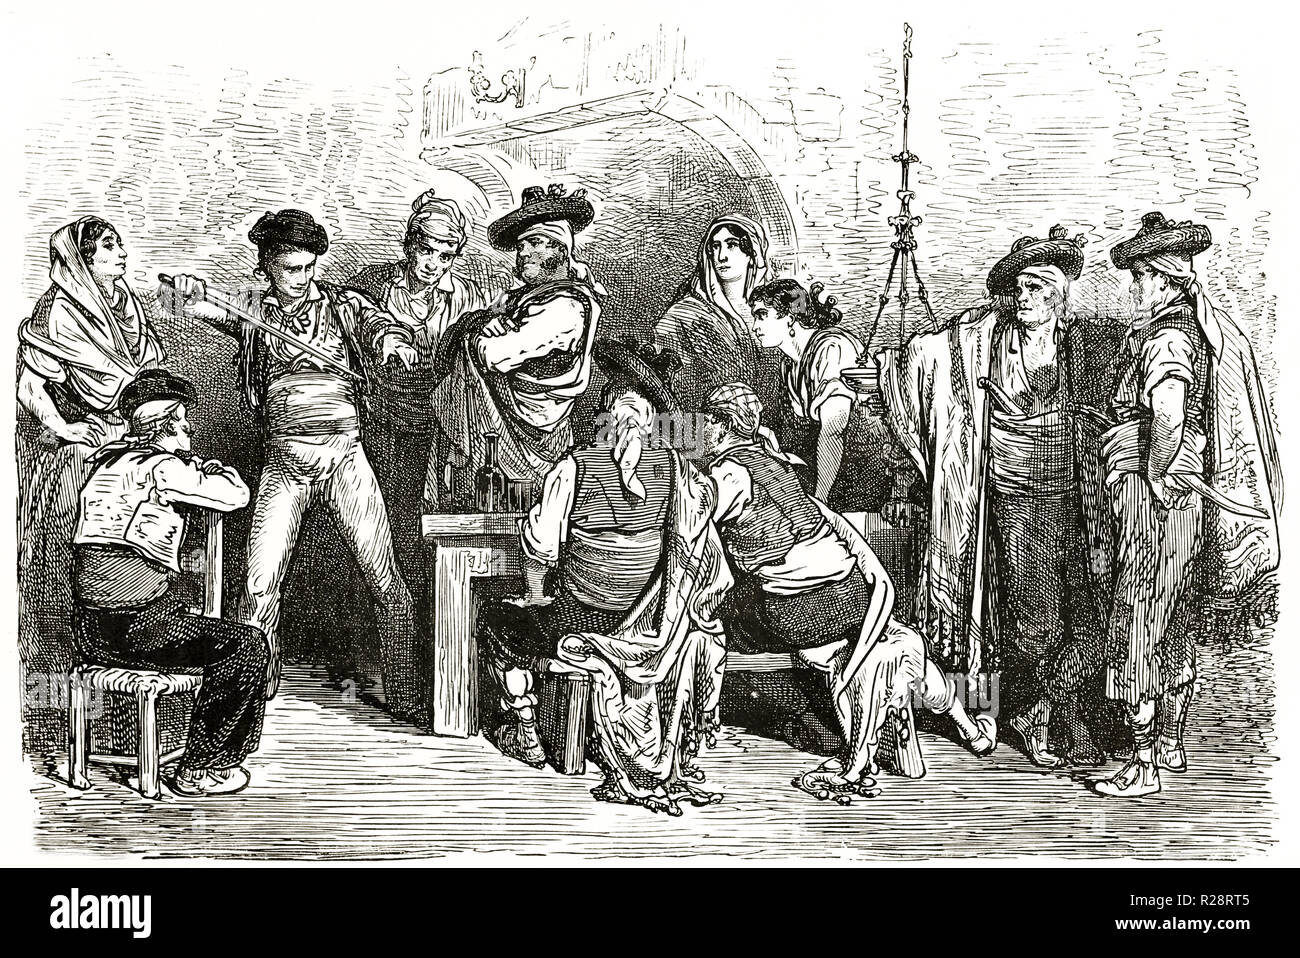 Vieille illustration mimant toreador corrida chez les personnes à Valence, en Espagne. Par Dore, publ. sur le Tour du Monde, Paris, 1863 Banque D'Images